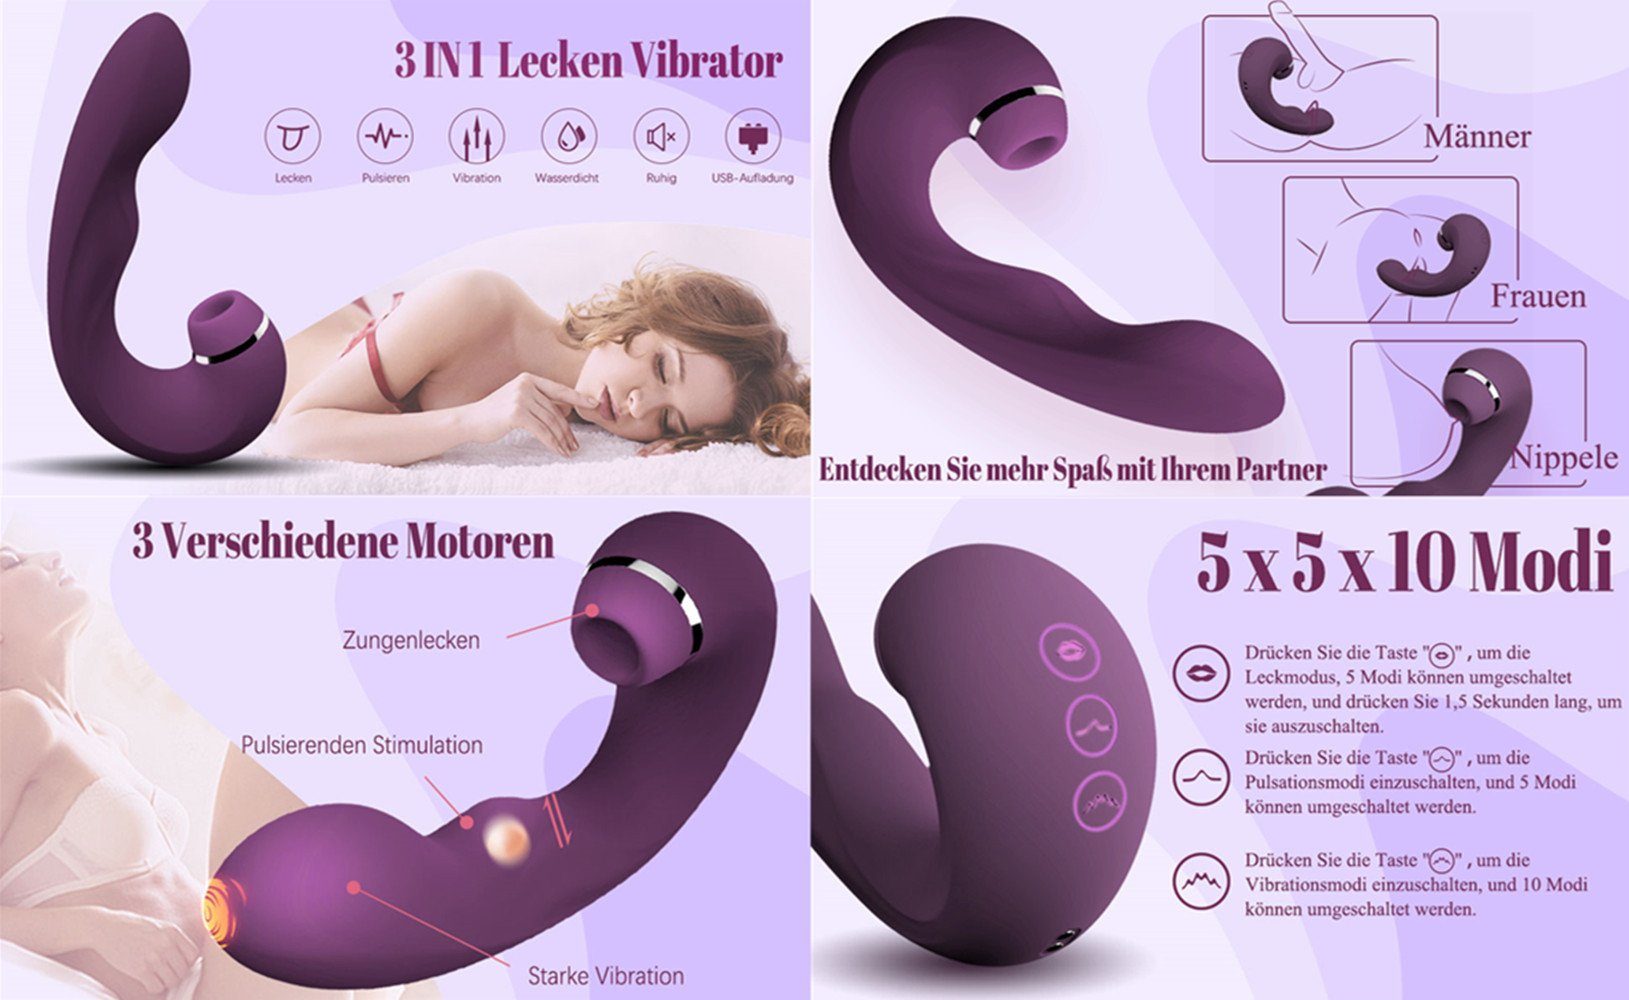 autolock Analvibrator Vibratoren für Sie für 5-10 Pulsation-Vibrationsmodi und mit Frauen, G-punkt,Sexspielzeug Saugen lila Vibrator Zungenlecken Klitoris